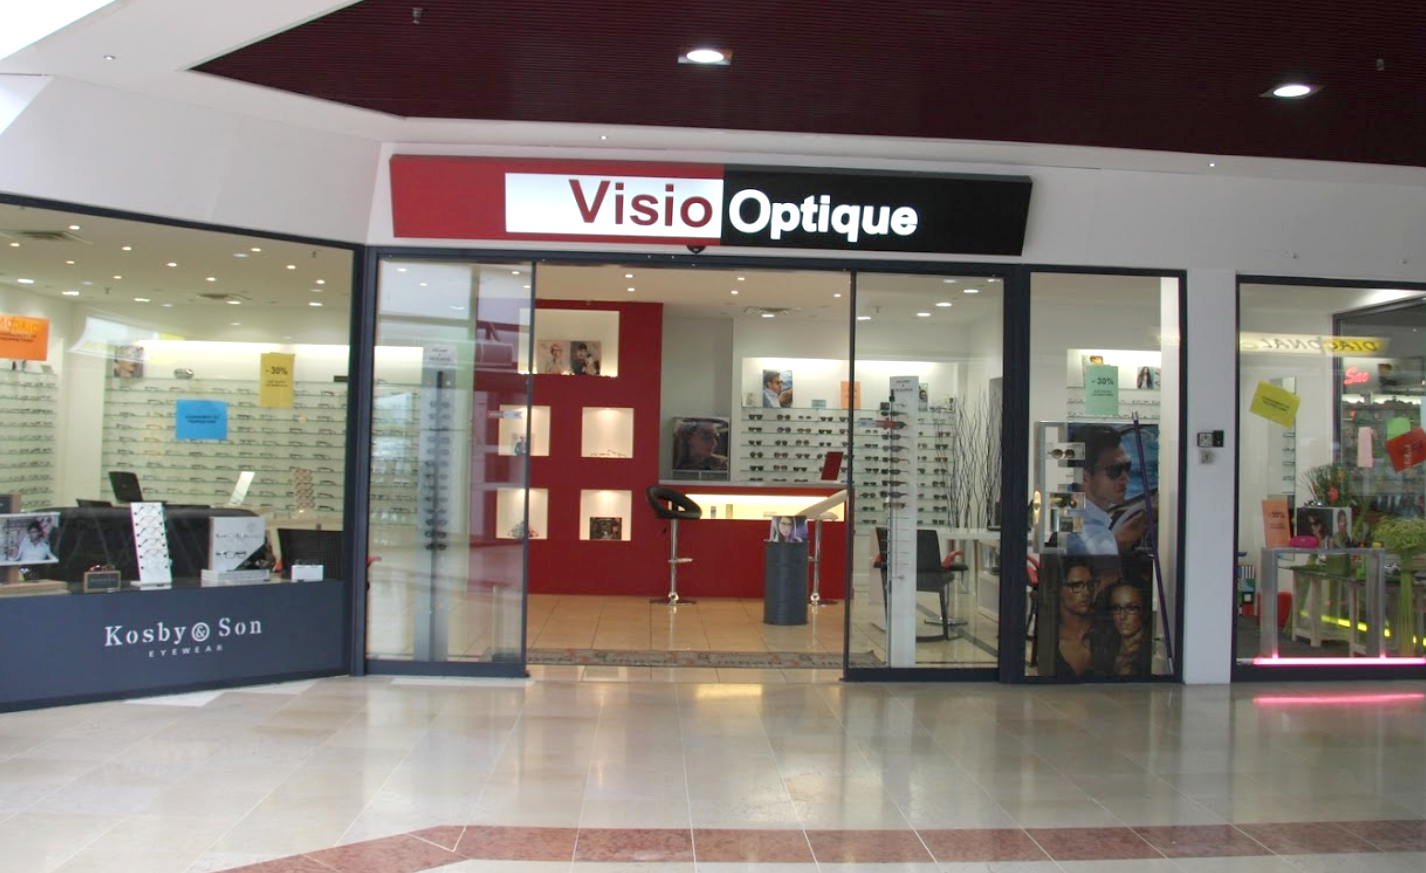 VISIO OPTIQUE spécialiste de l'optique et des lunettes pour enfants à SAINT ETIENNE DE FONTBELLON - Optikid